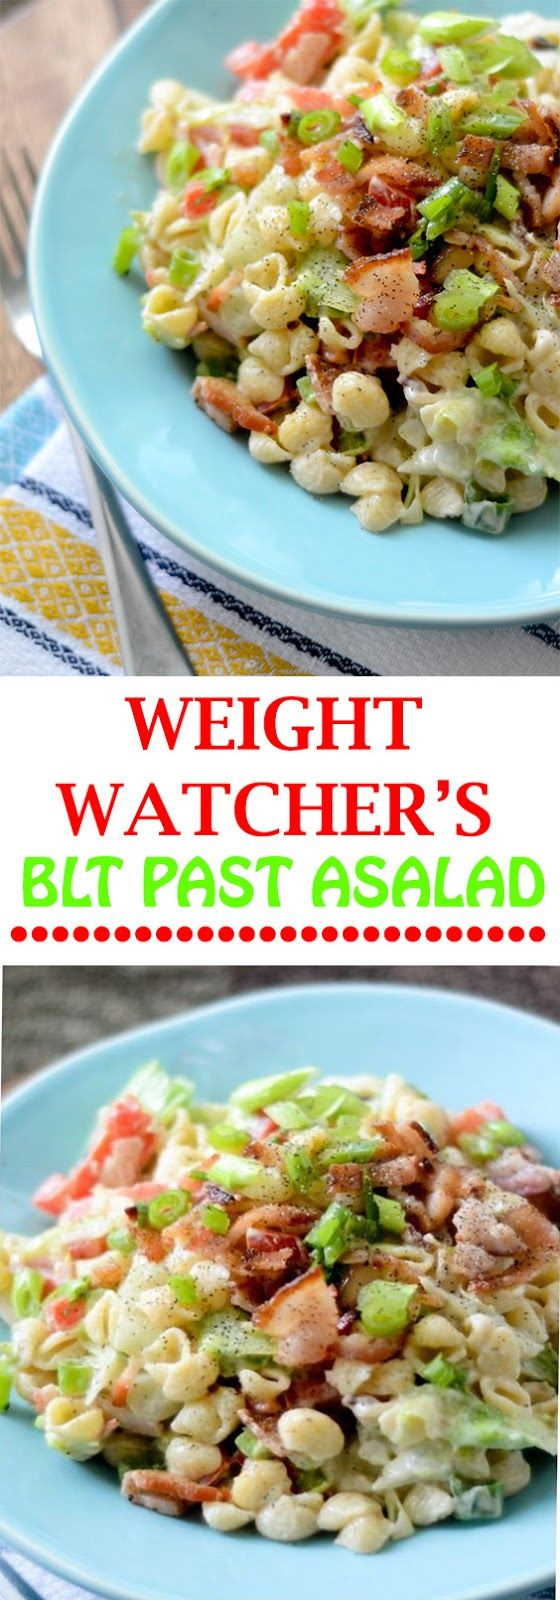 Weight Watchers Blt Pasta Salad
 WEIGHT WATCHER’S BLT PASTA SALAD